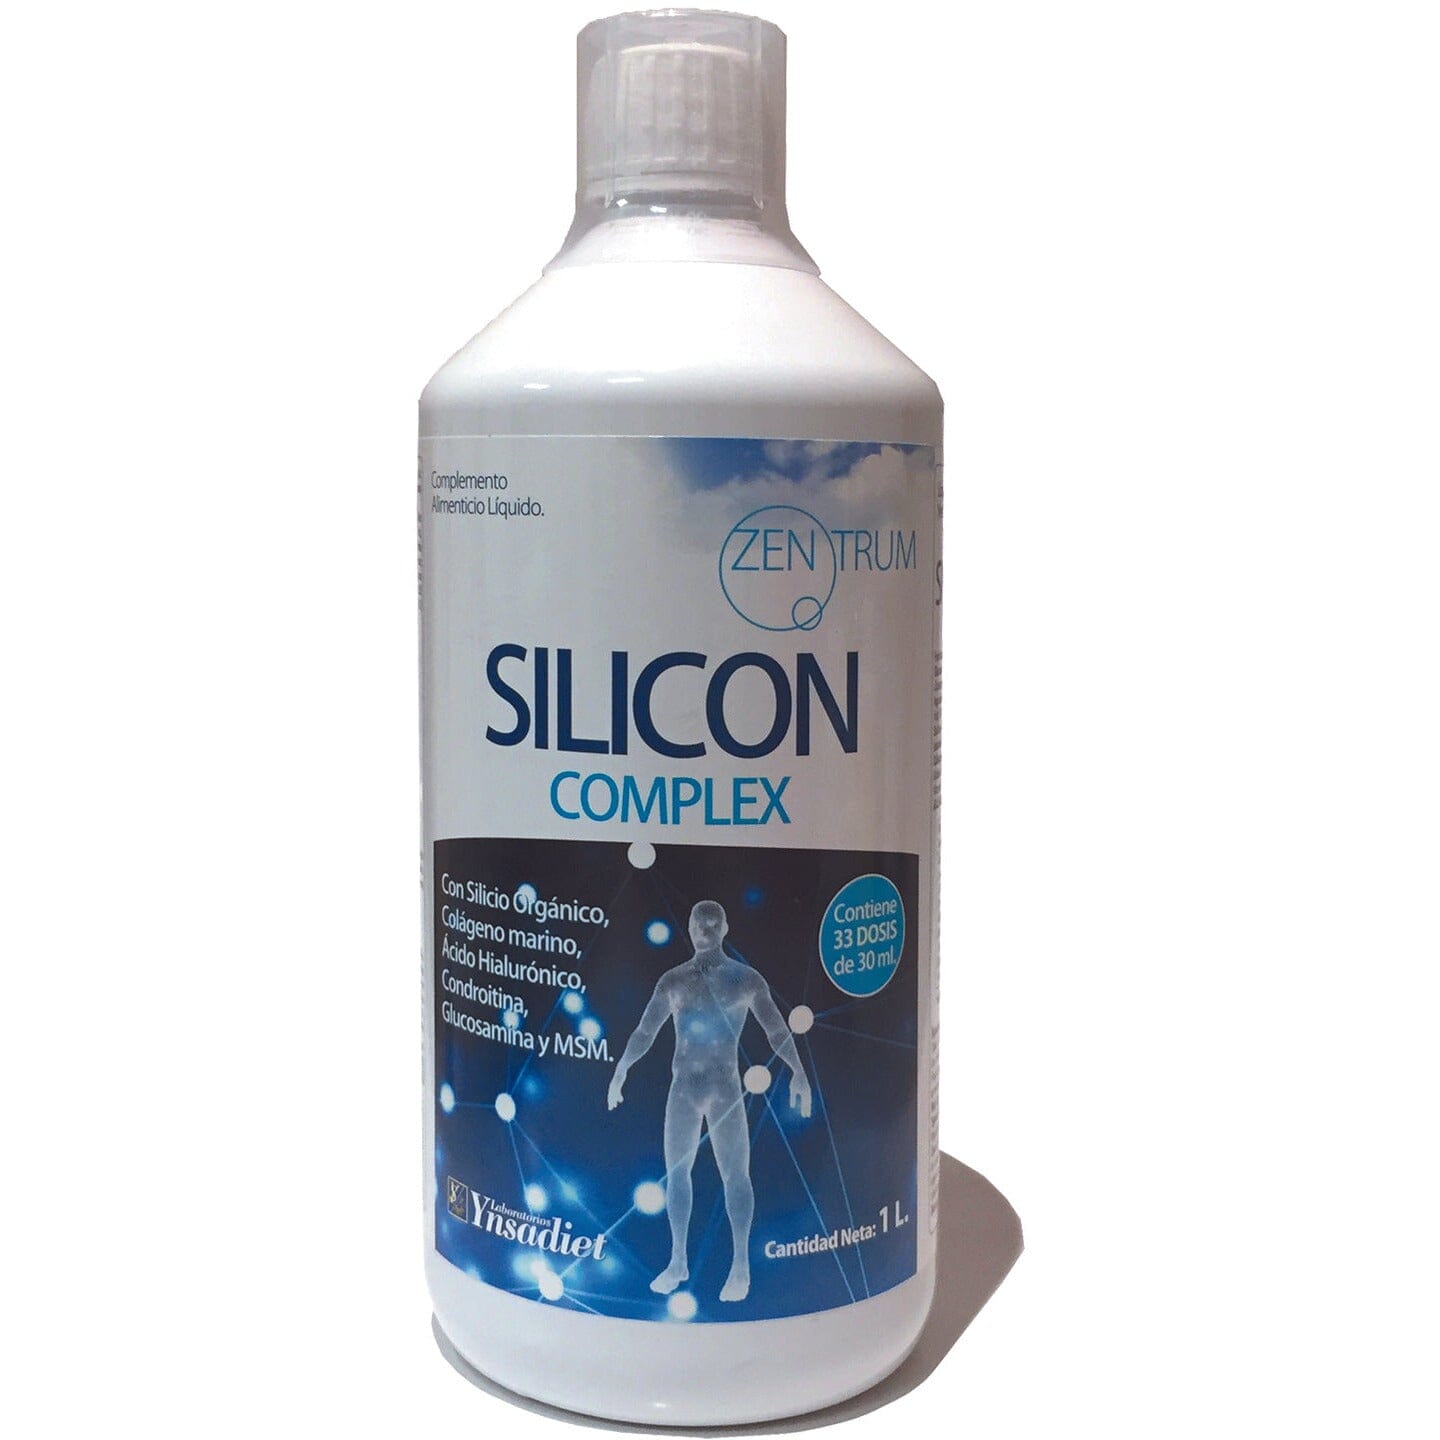 Silicon Complex 1 litro | Ynsadiet - Dietetica Ferrer